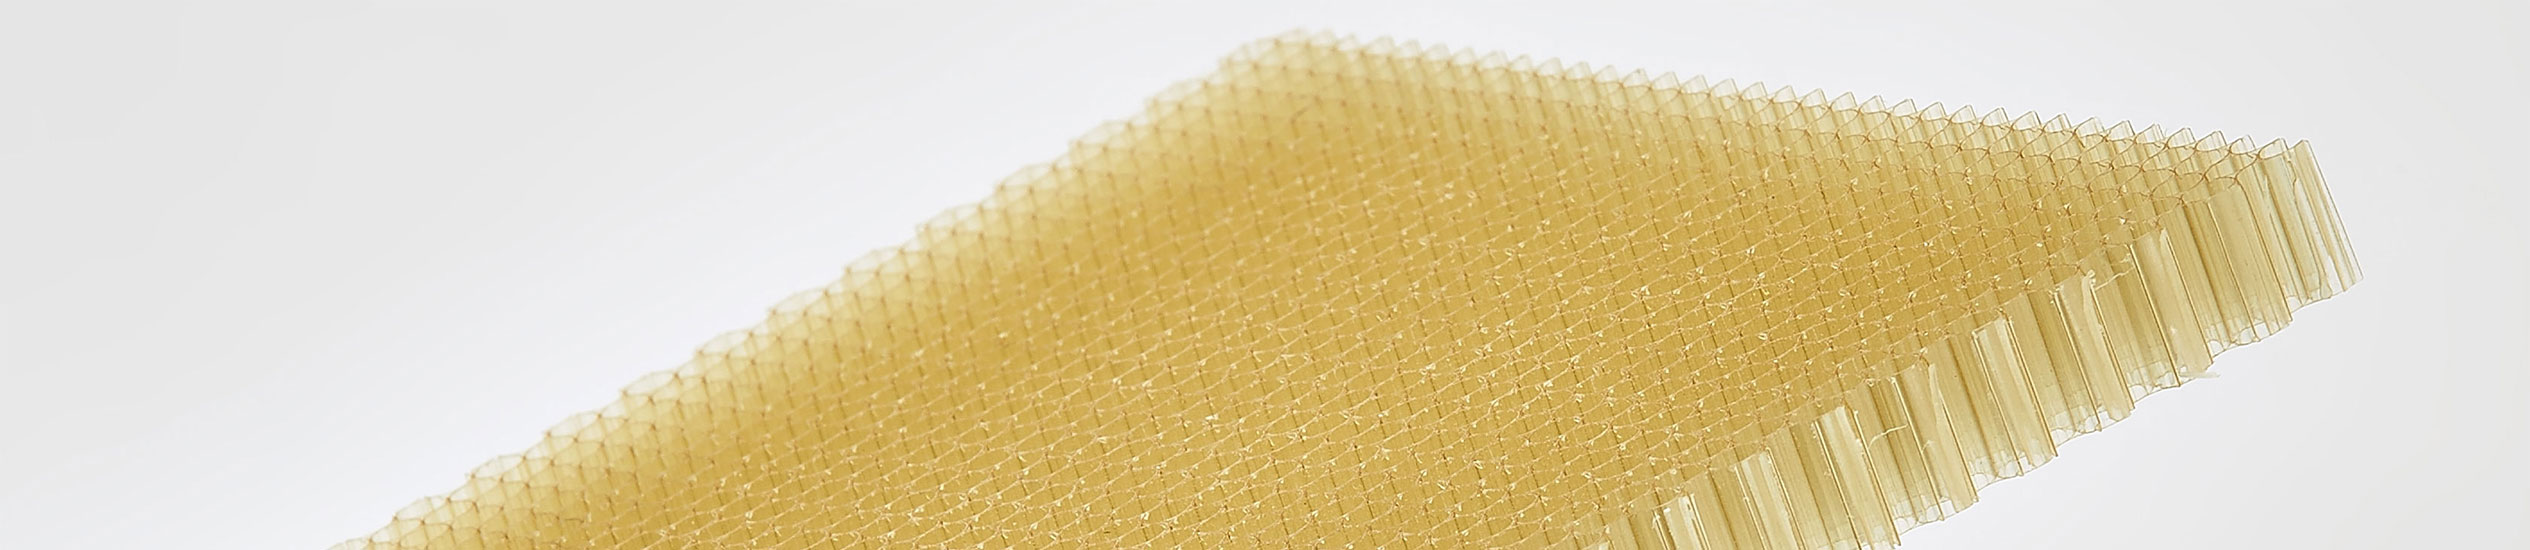 pannelli sandwich CEL COMPONENTS sono realizzati con diverse componenti che ne vanno a costituire l'anima: nidi d'ape in alluminio e honeycomb in materiale ter